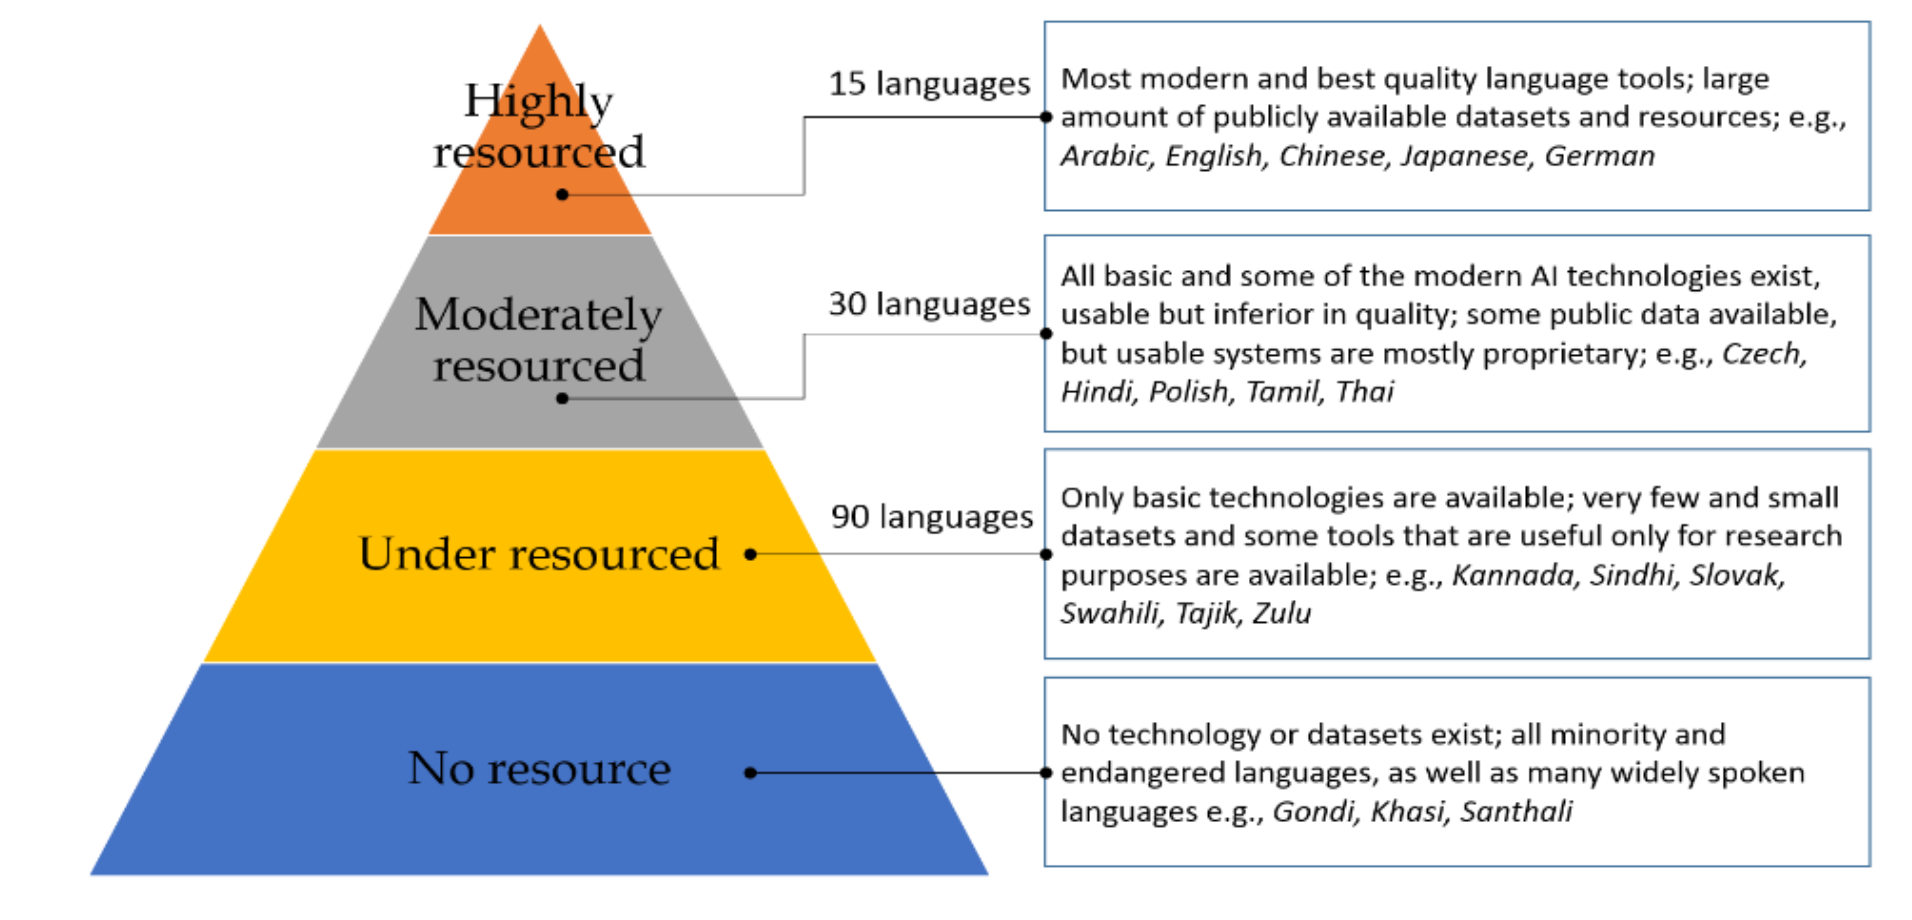 Clasificación de idiomas según la disponibilidad de tecnología, herramientas y recursos lingüísticos